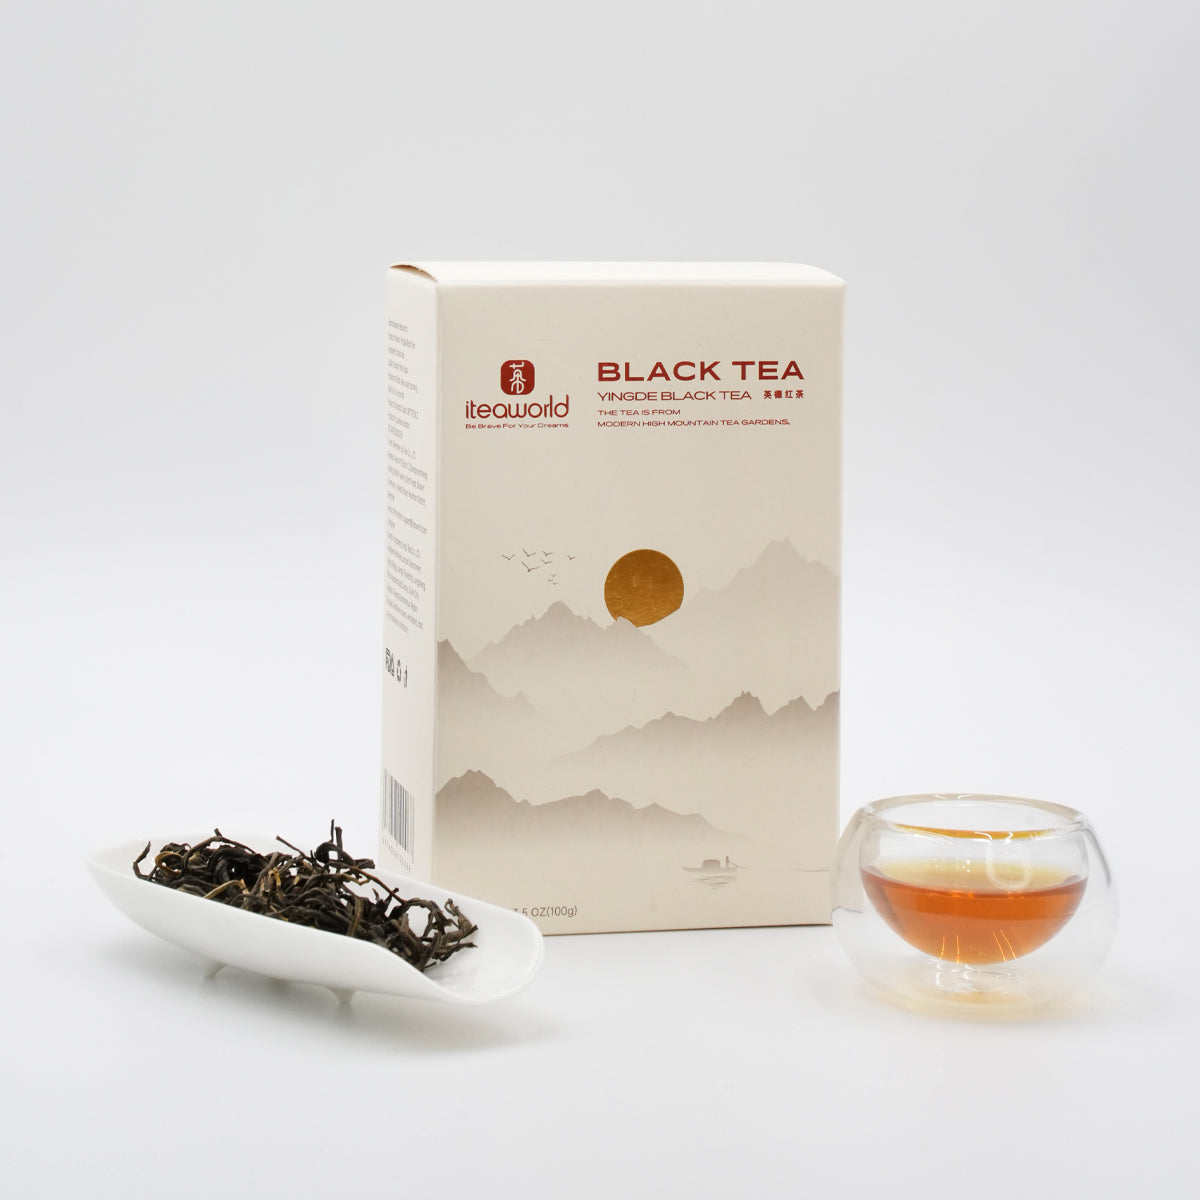 yinde-blacktea-Loose-leaf-tea-and-packaging